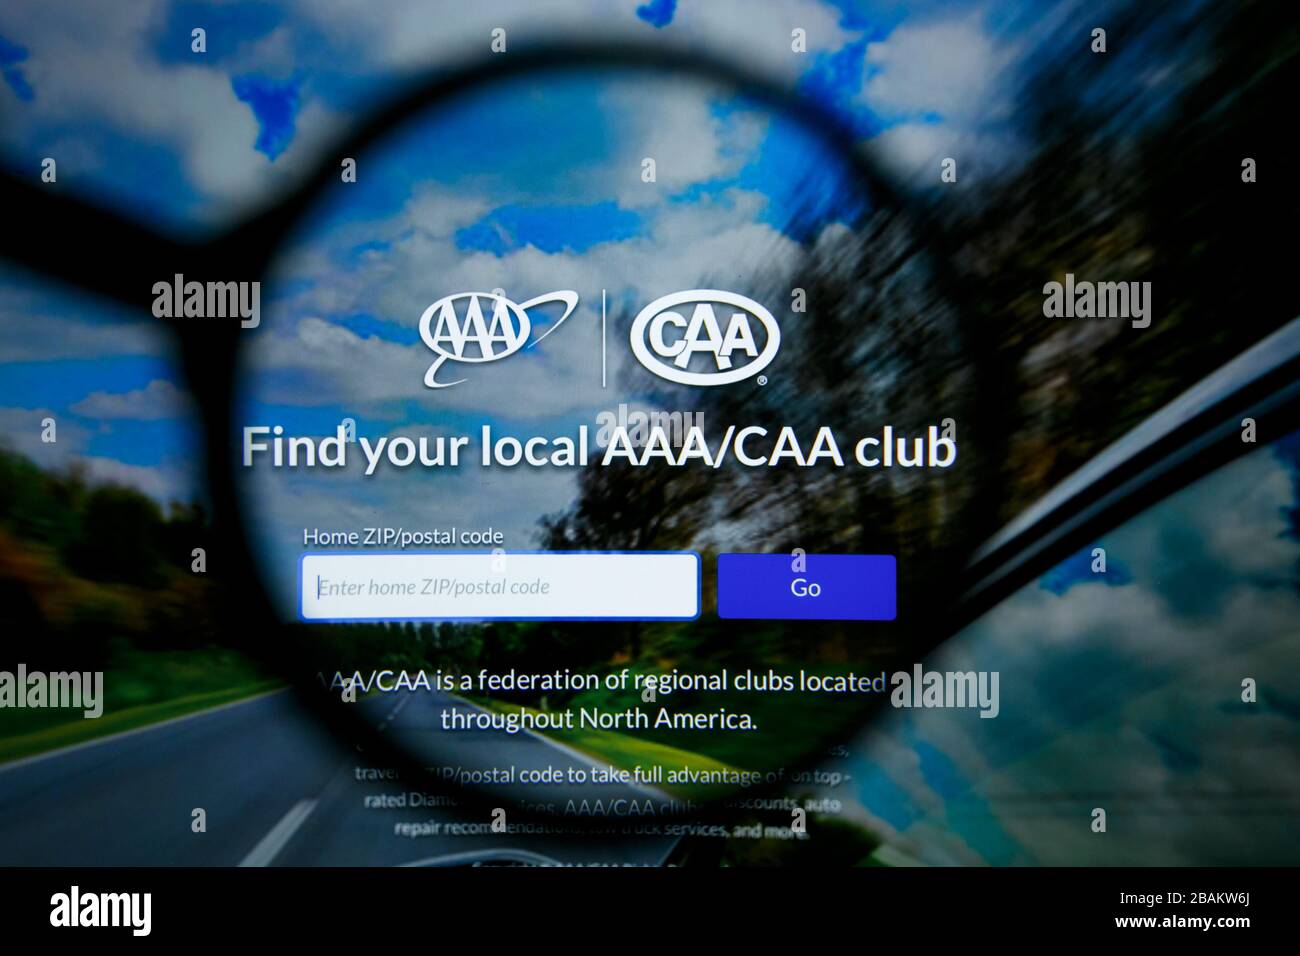 Los Angeles, California, EE.UU. - 25 de junio de 2019: Editorial ilustrativa de la página web de la AAA CAA. Logotipo AAA CAA visible en la pantalla Foto de stock